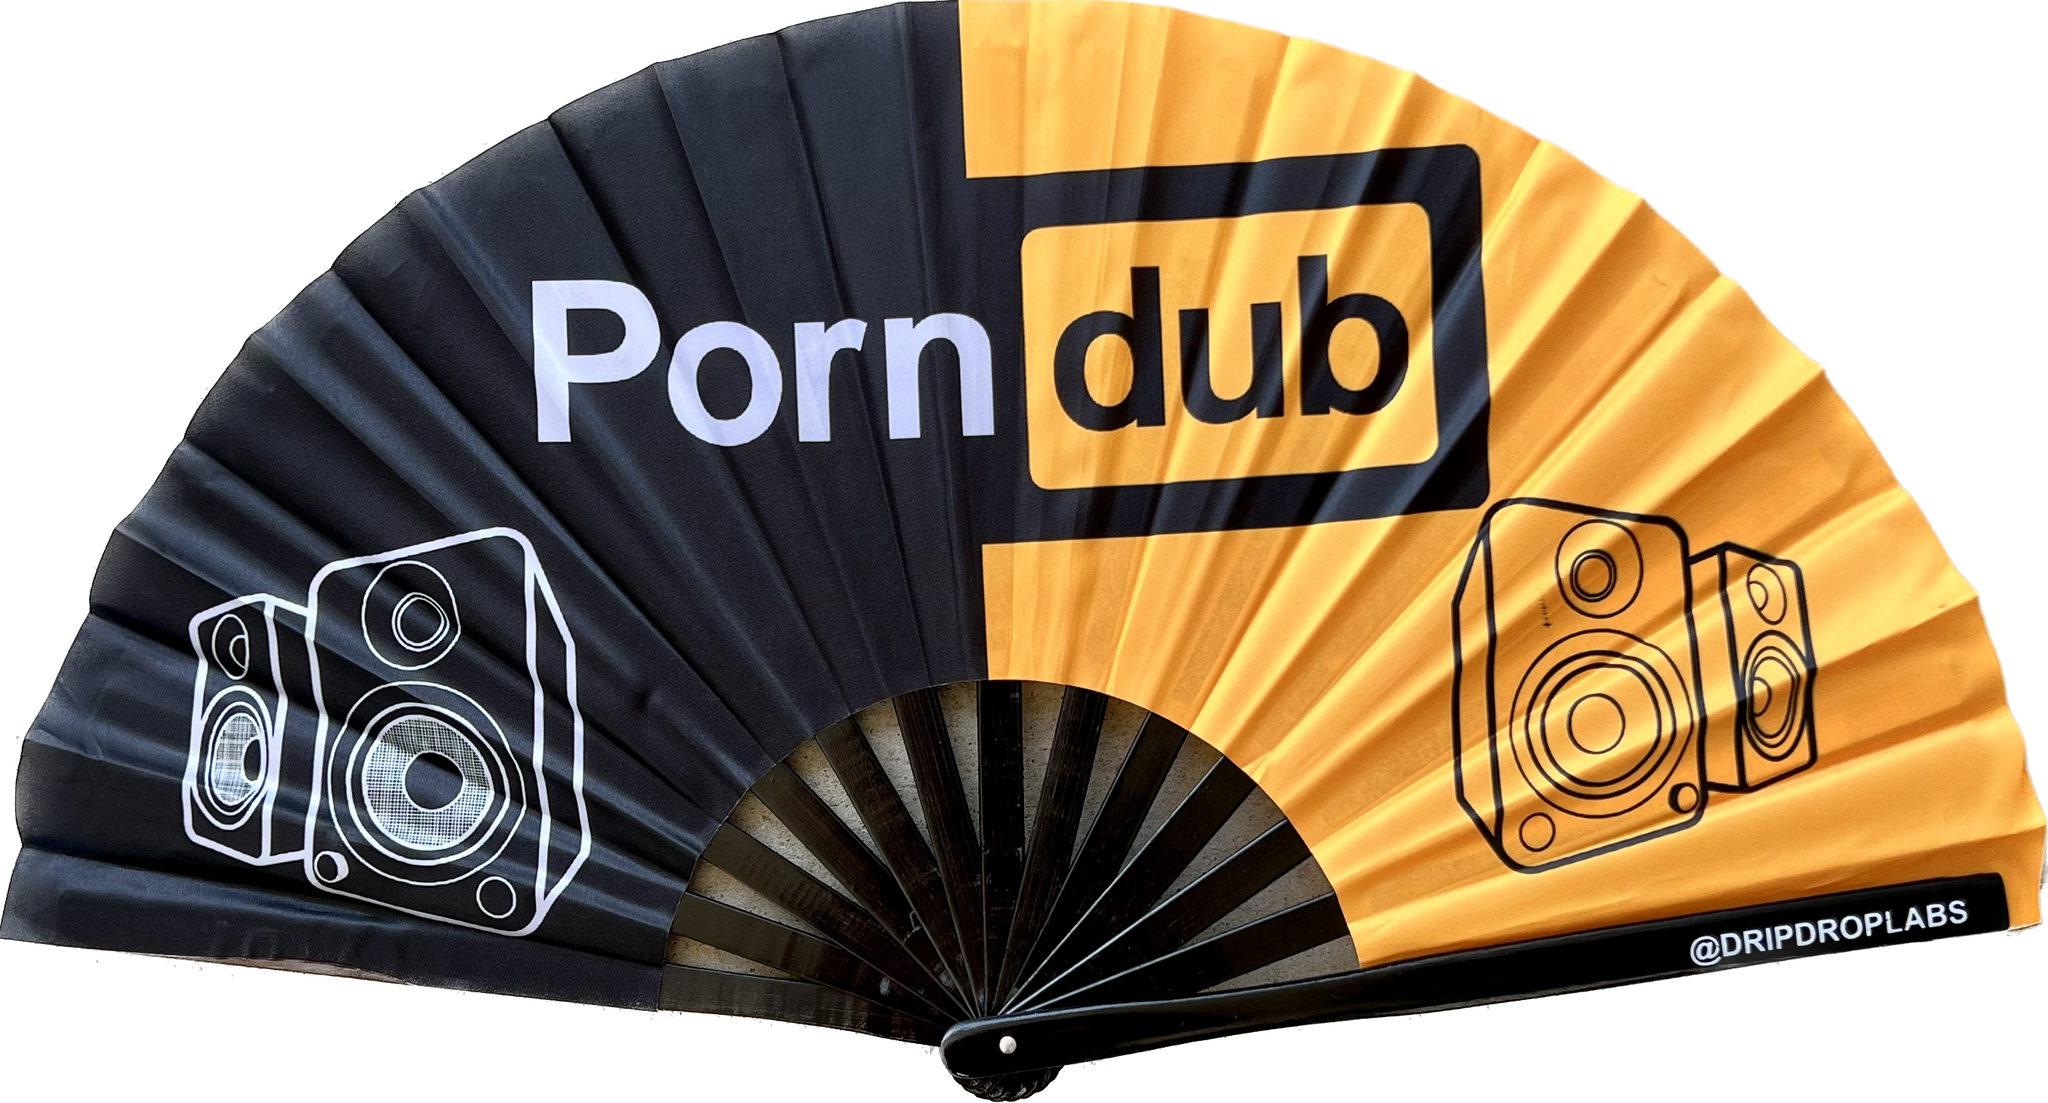 PornDub - Glow Fan